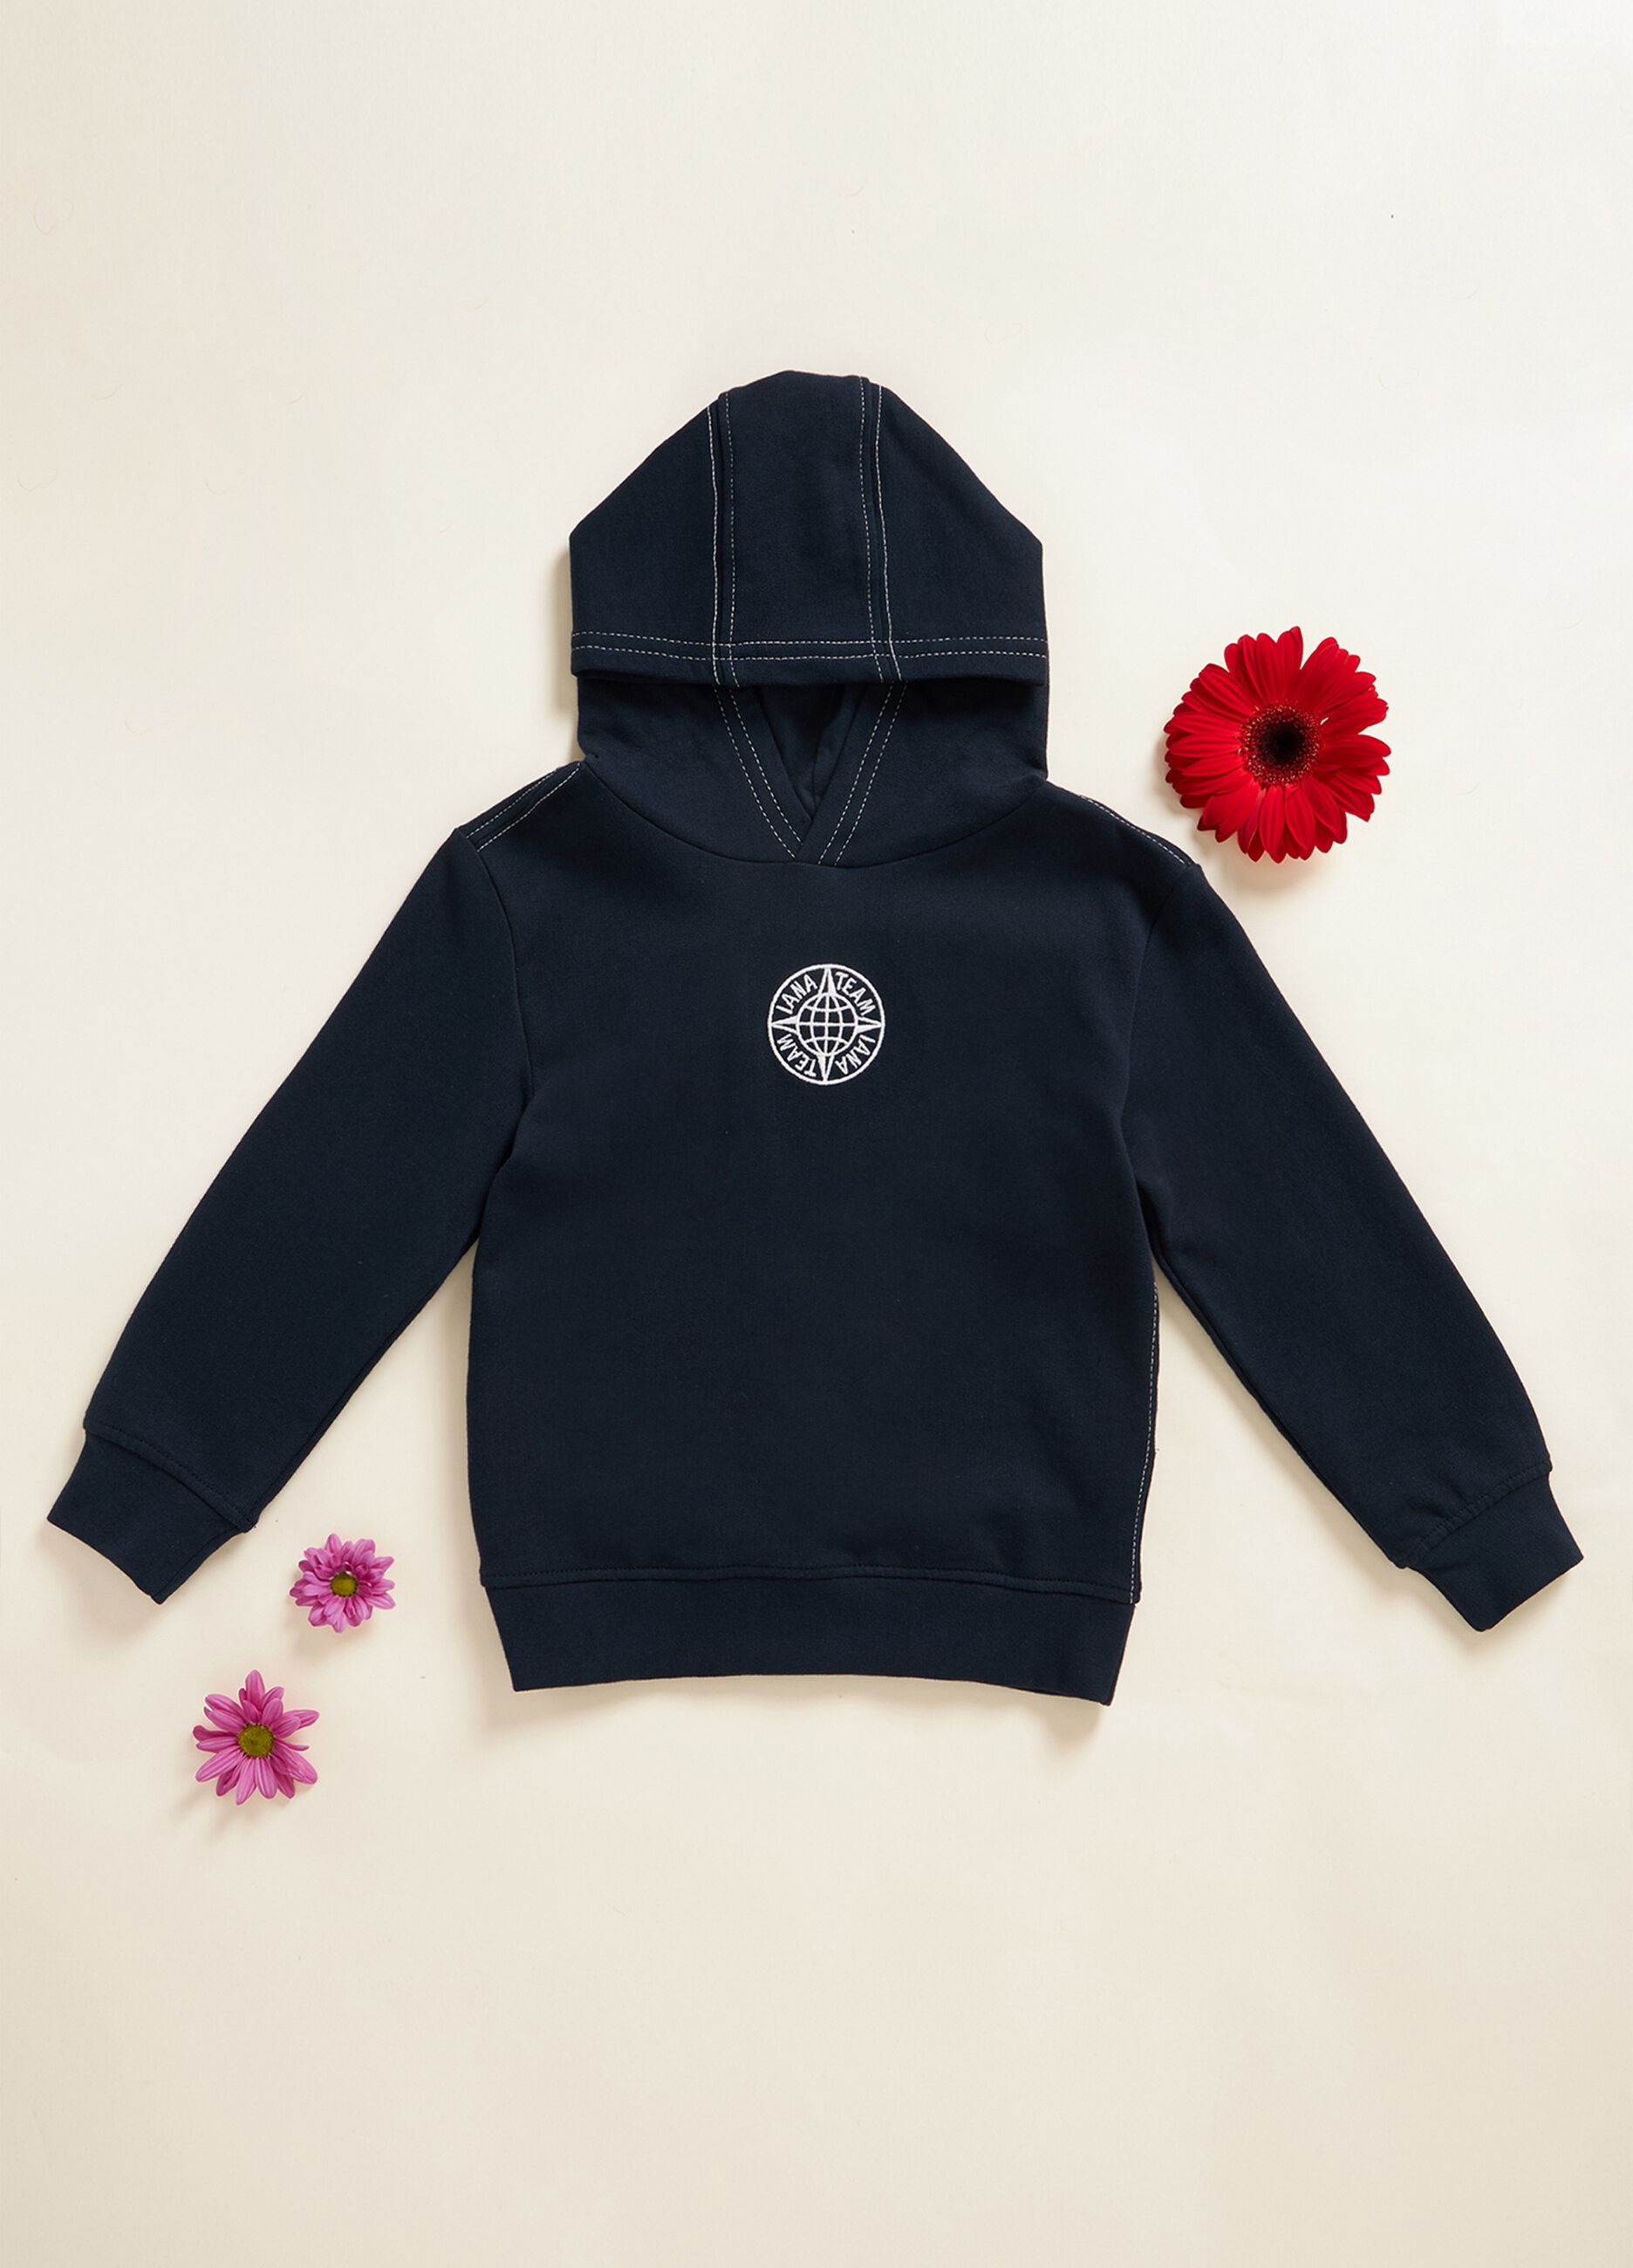 IANA 100% cotton sweatshirt with hood